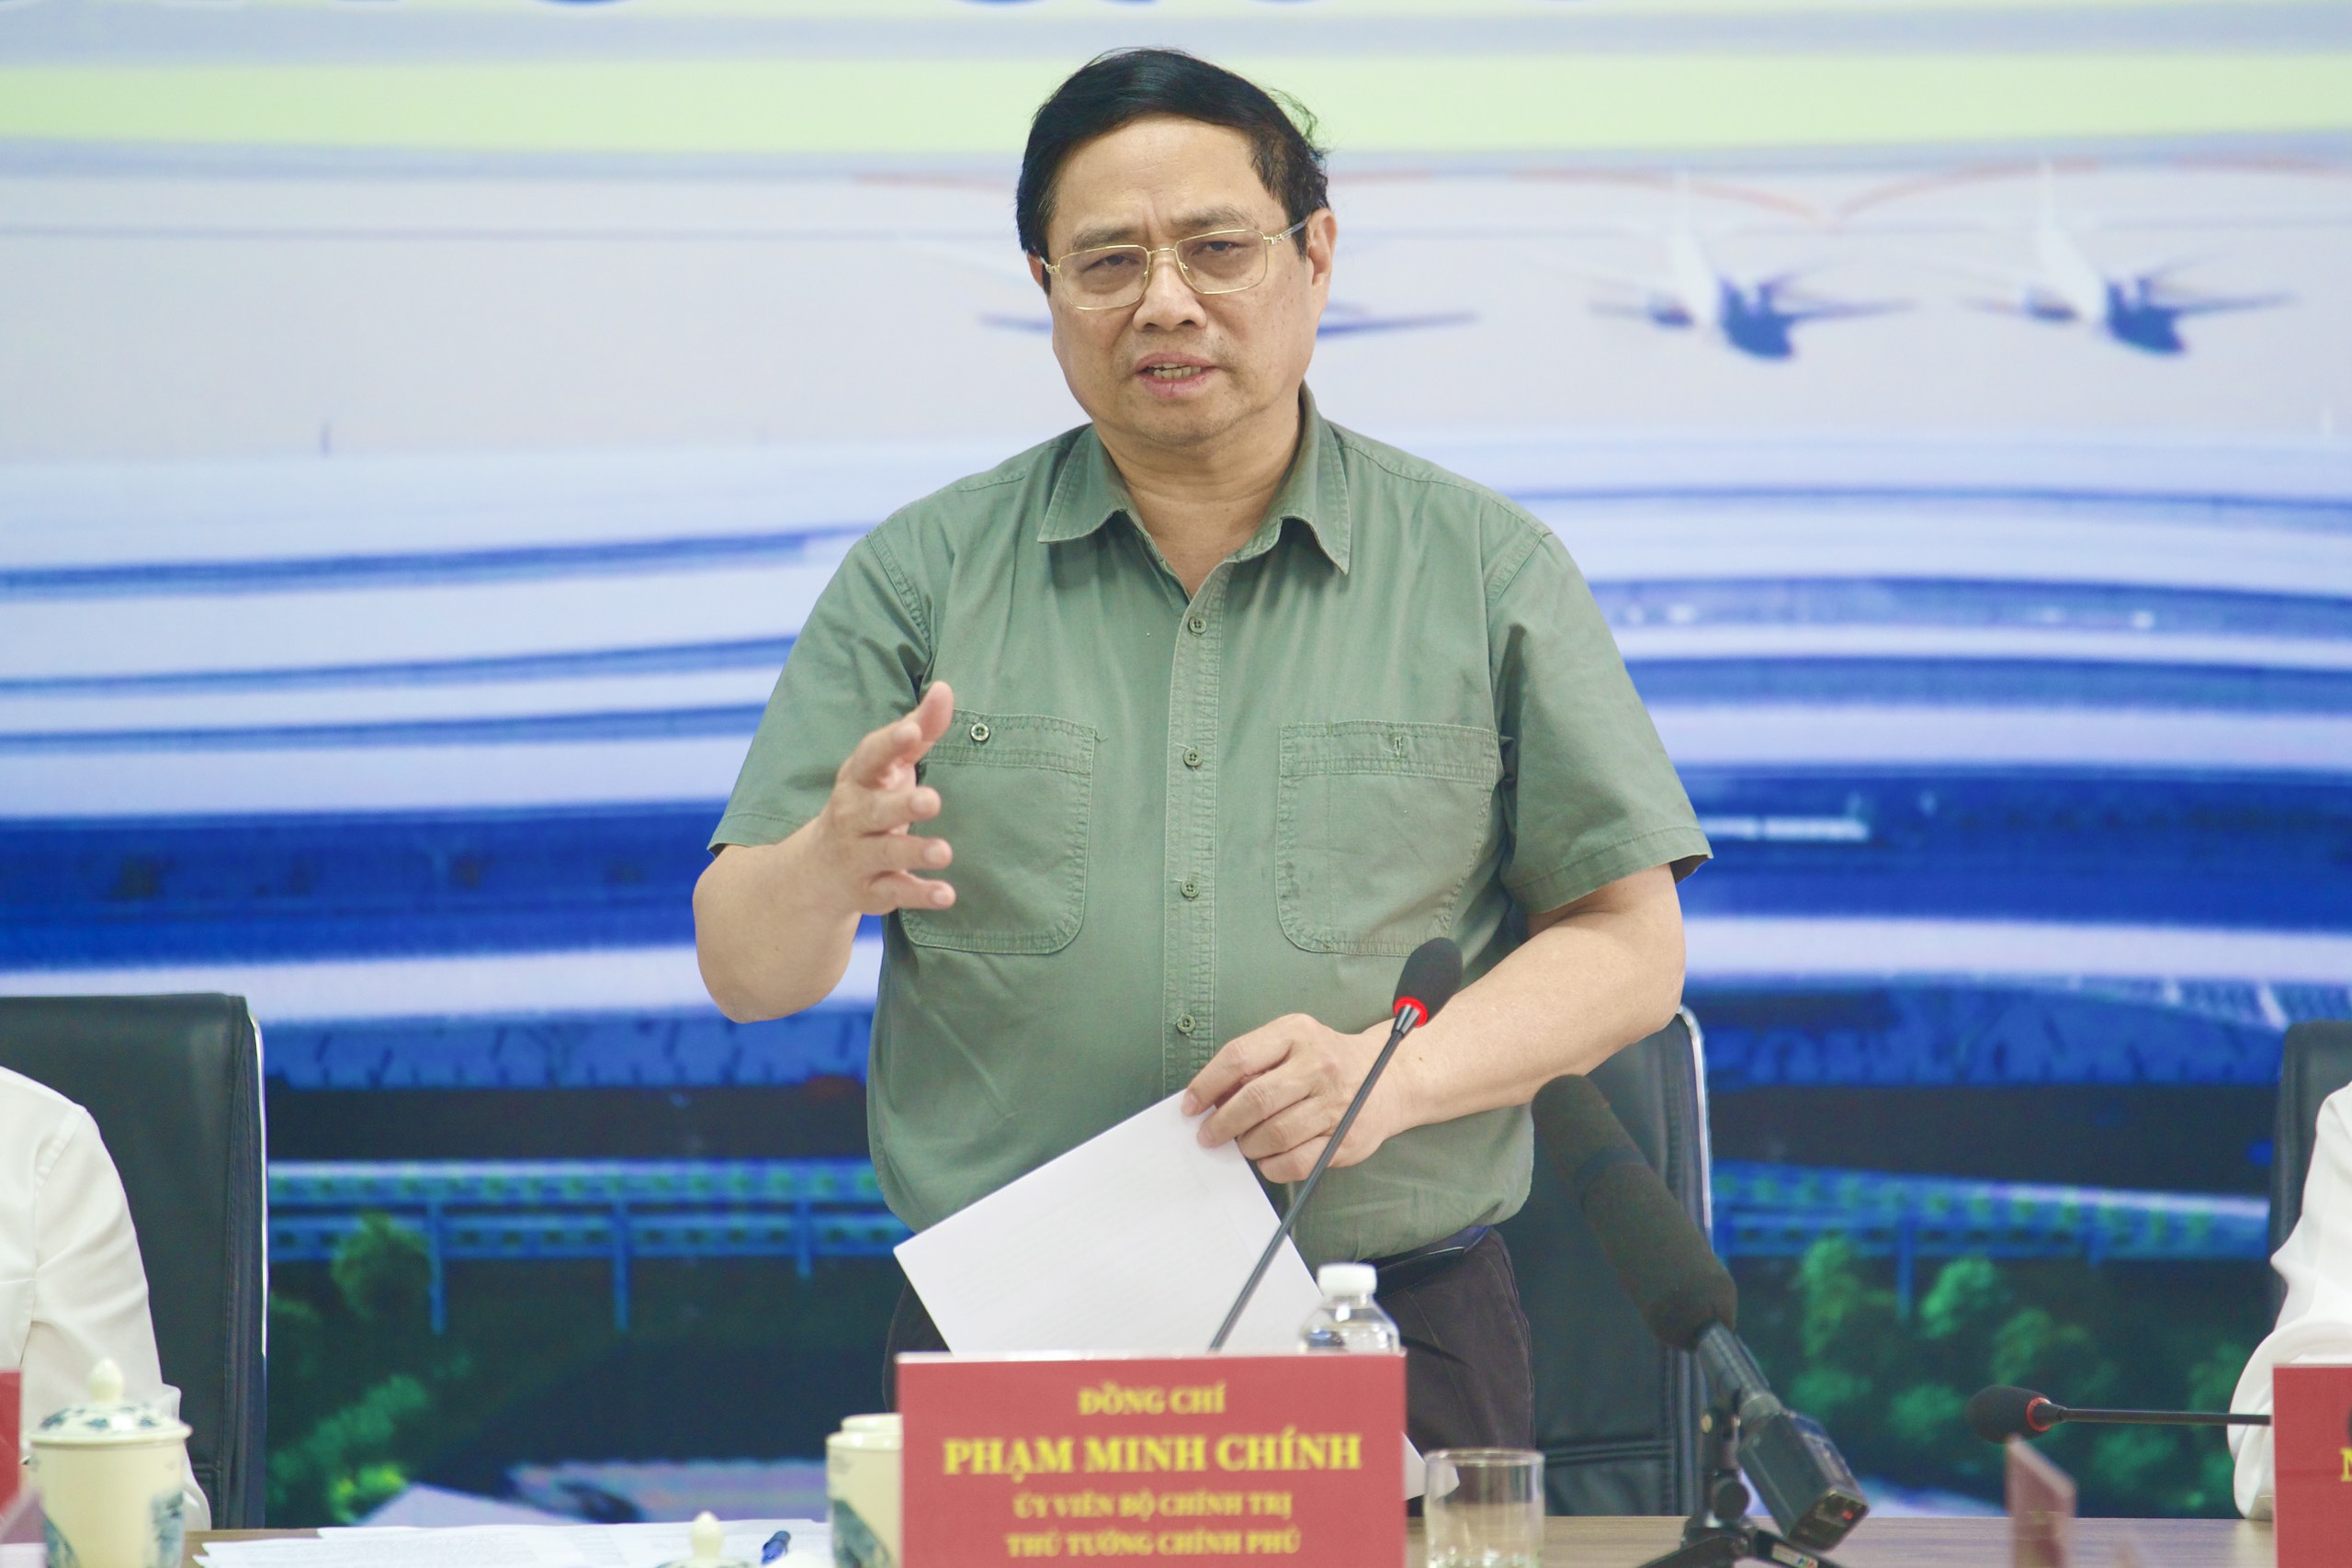 Thủ tướng: Nỗ lực hoàn thành nhà ga T3 sân bay Tân Sơn Nhất vào 30/4/2025- Ảnh 9.